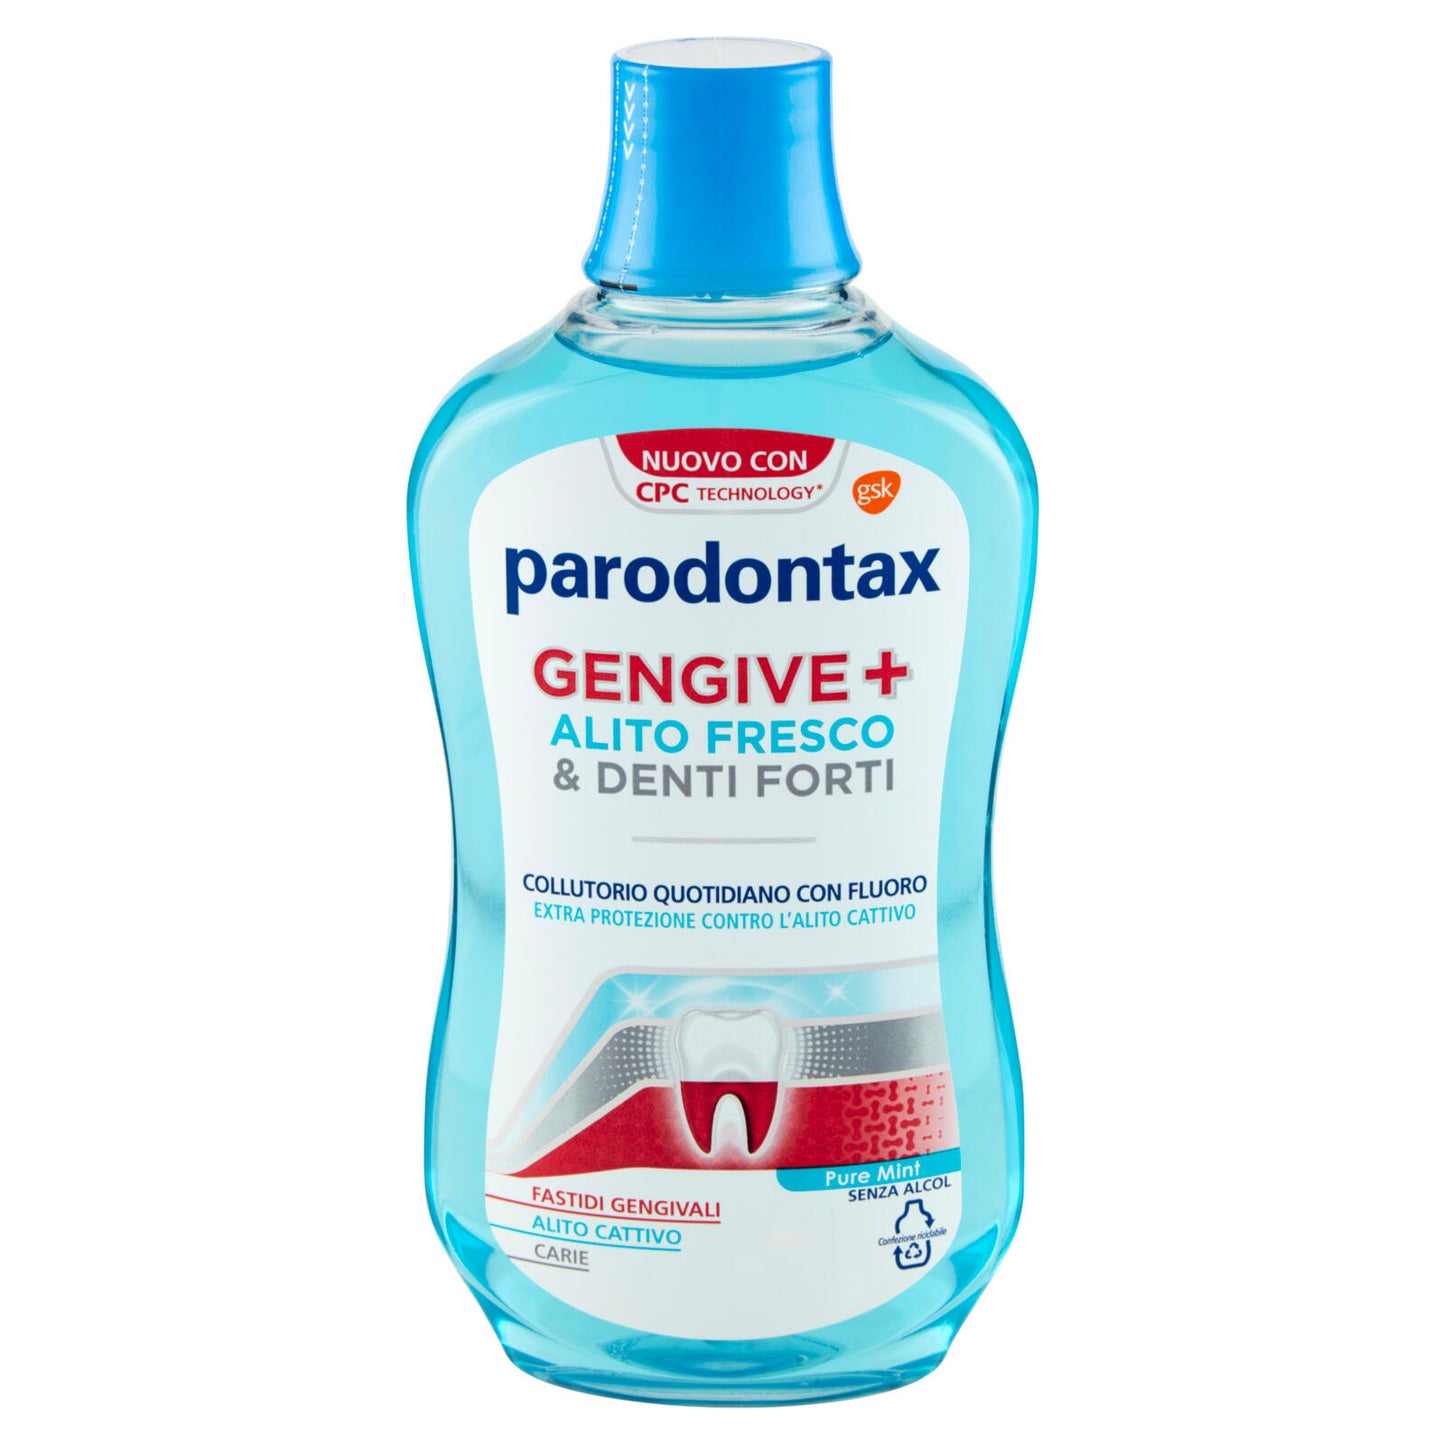 Parodontax Collutorio Gengive+ Alito Fresco & Denti Forti contro Fastidi Gengivali Carie 500 ml